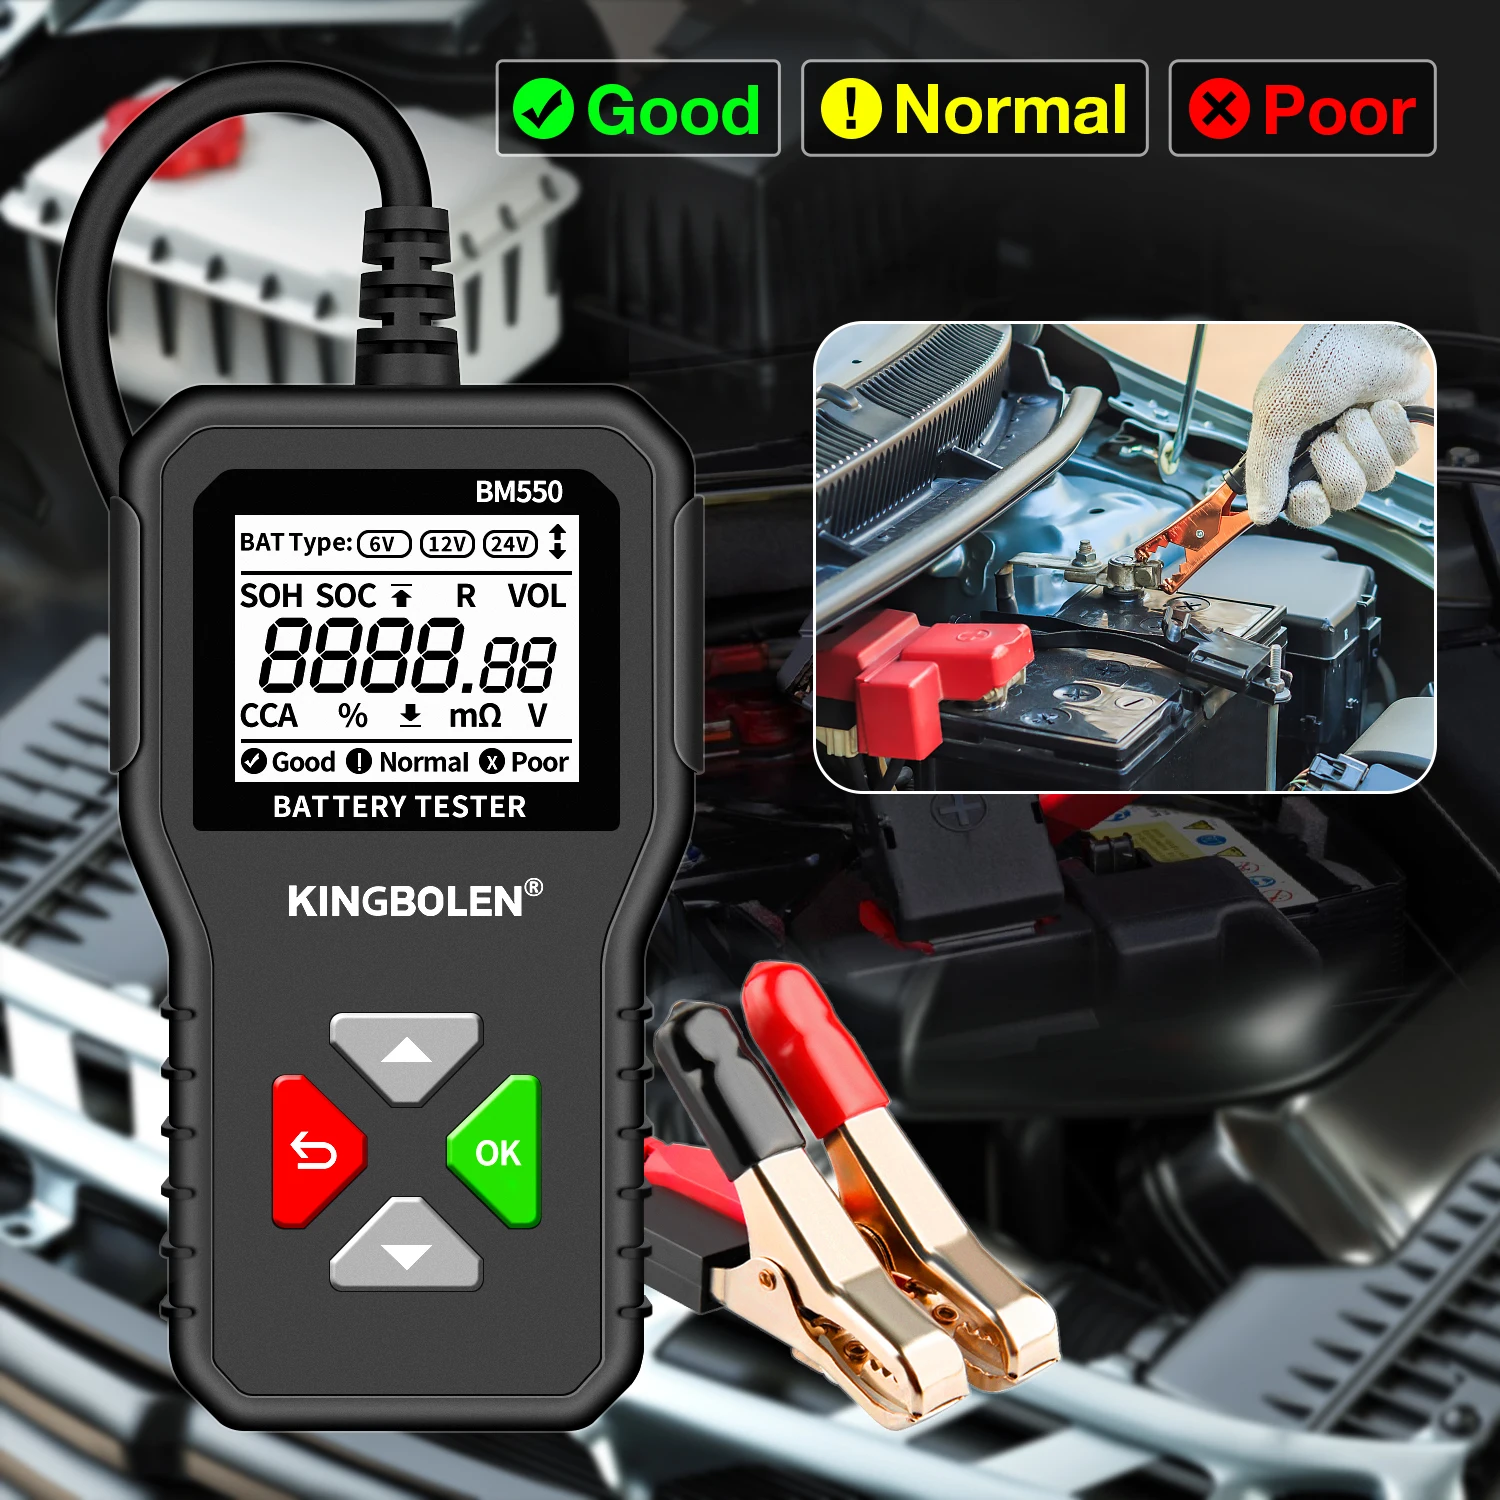 Kingbolen Bm550 Auto Batterie Tester Obd2 6v 12v 24v 100-2000 Cca 2ah-220ah  Batterie System Erkennen Auto Batterie Analysator Auto Diagno – Kaufen Sie  Kingbolen Bm550 Auto Batterie Tester Obd2 6v 12v 24v